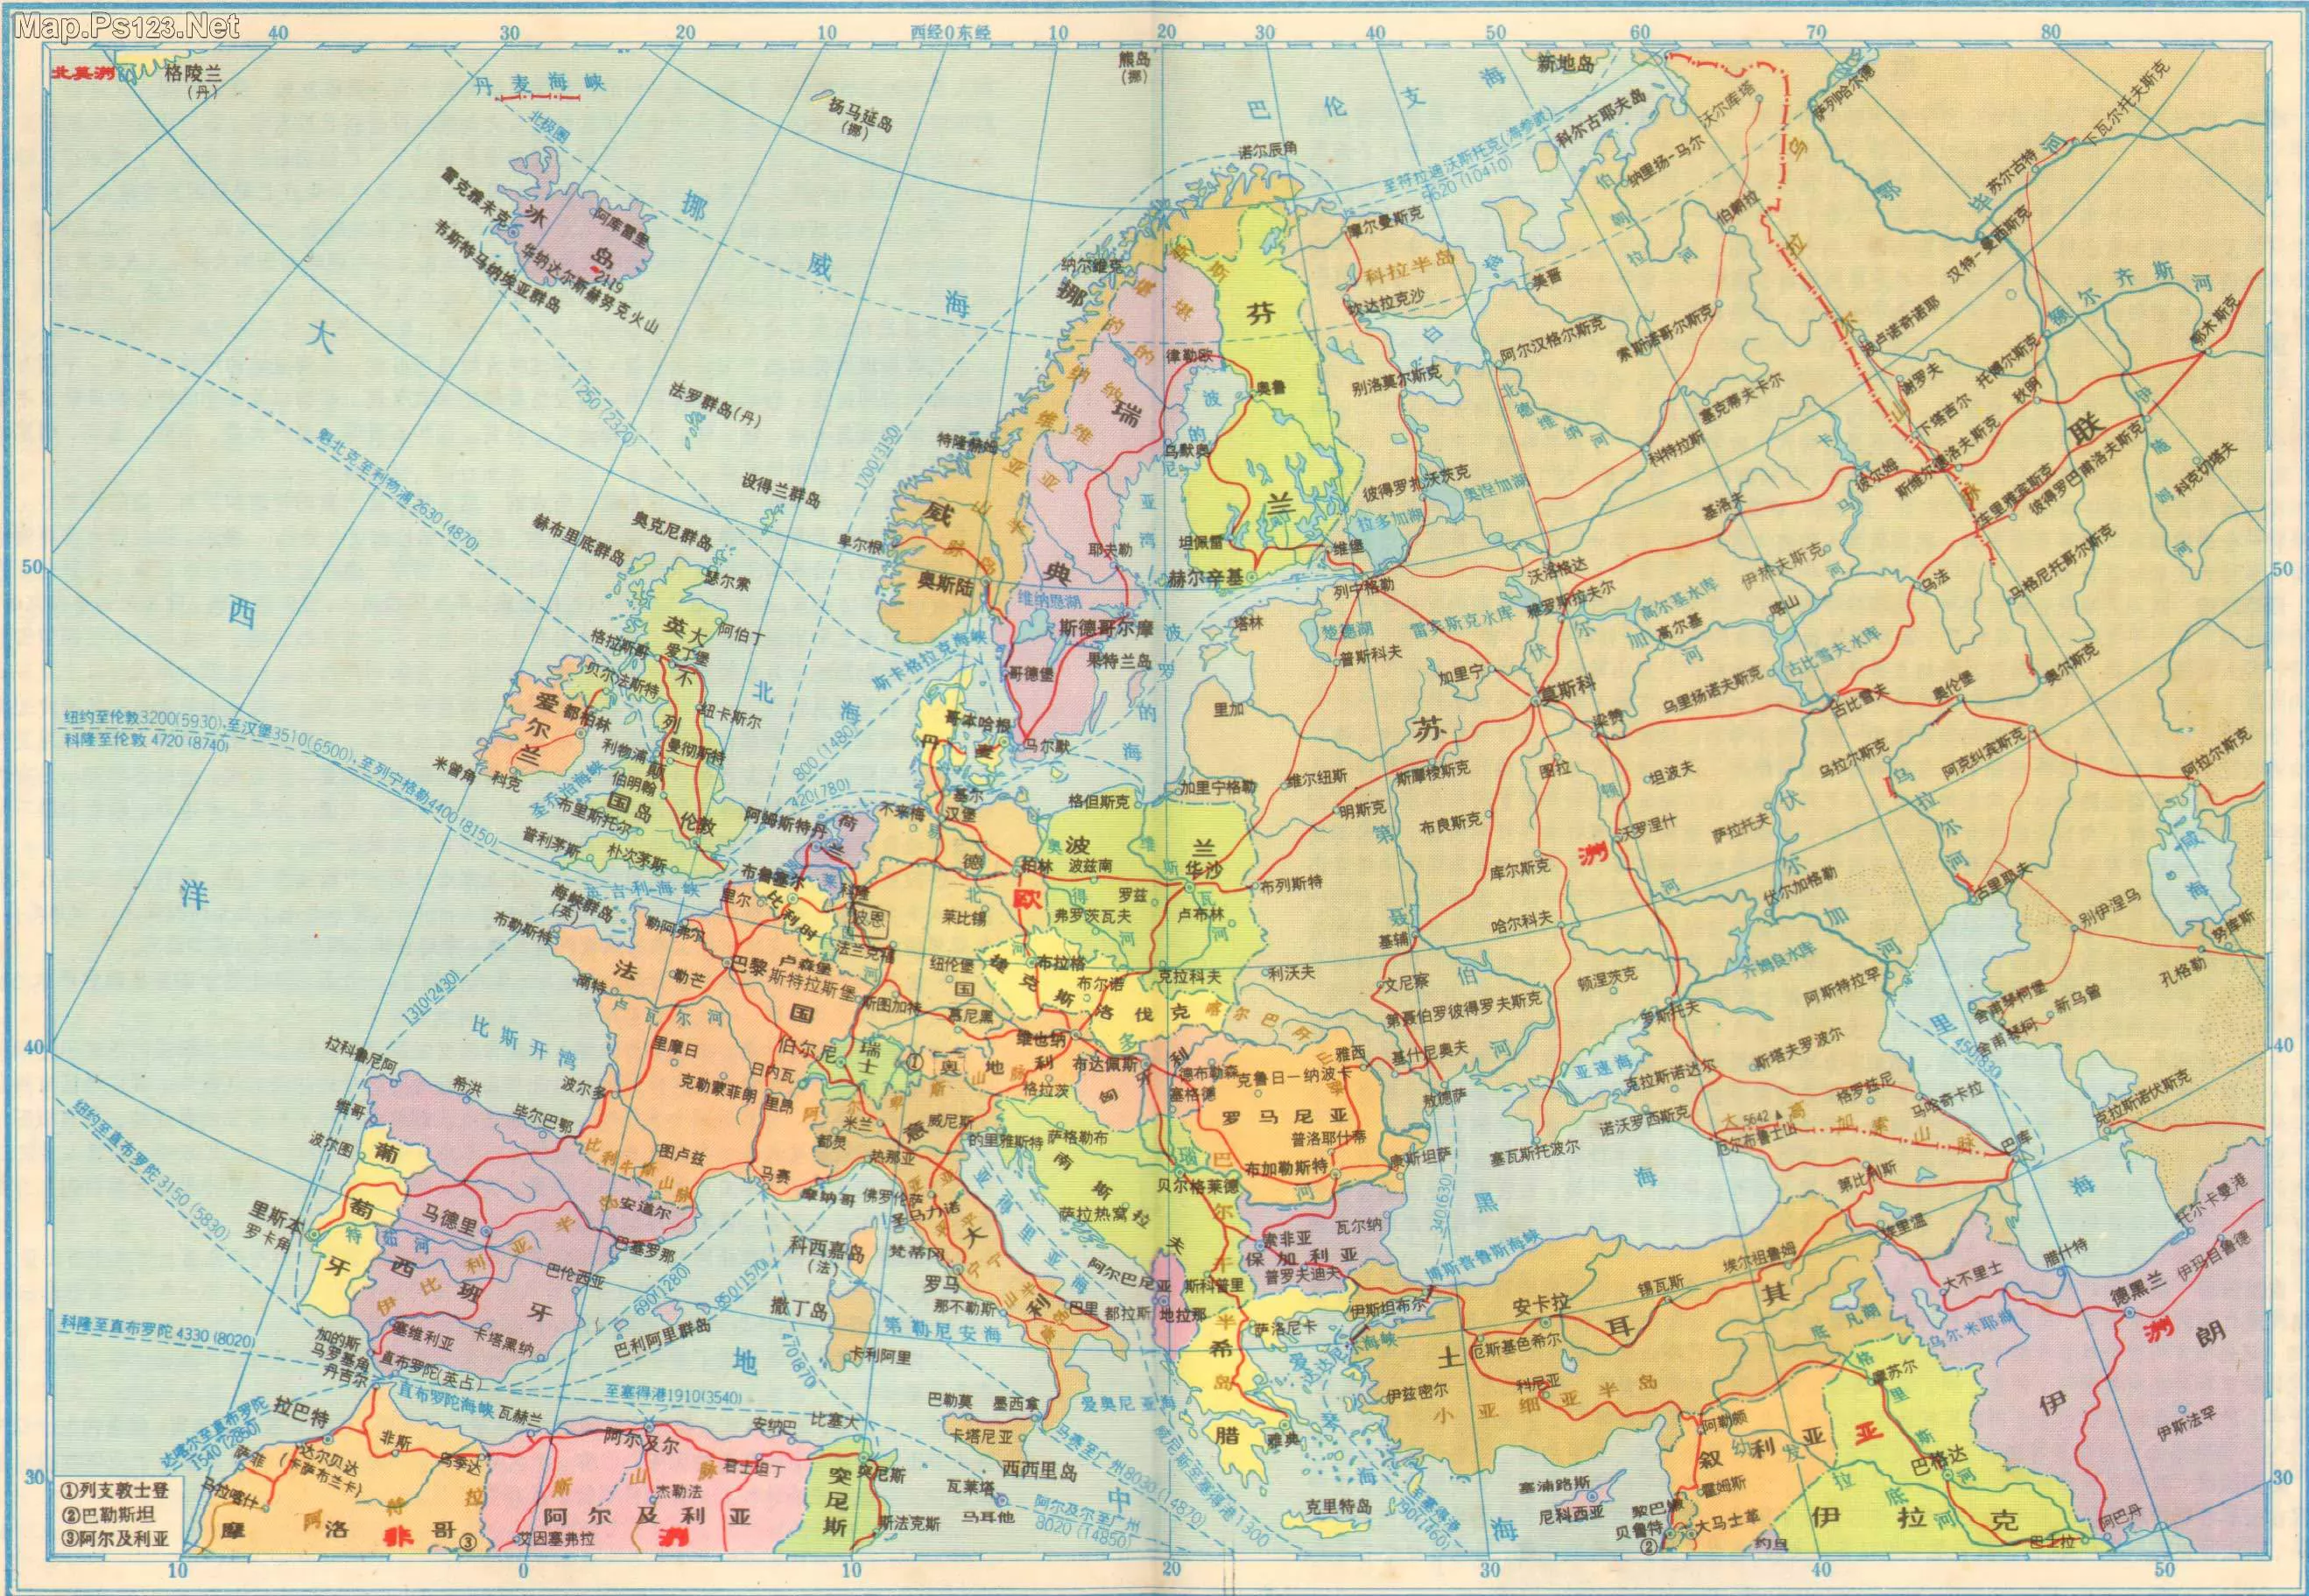 欧洲在地球上的位置图_世界地图_初高中地理网